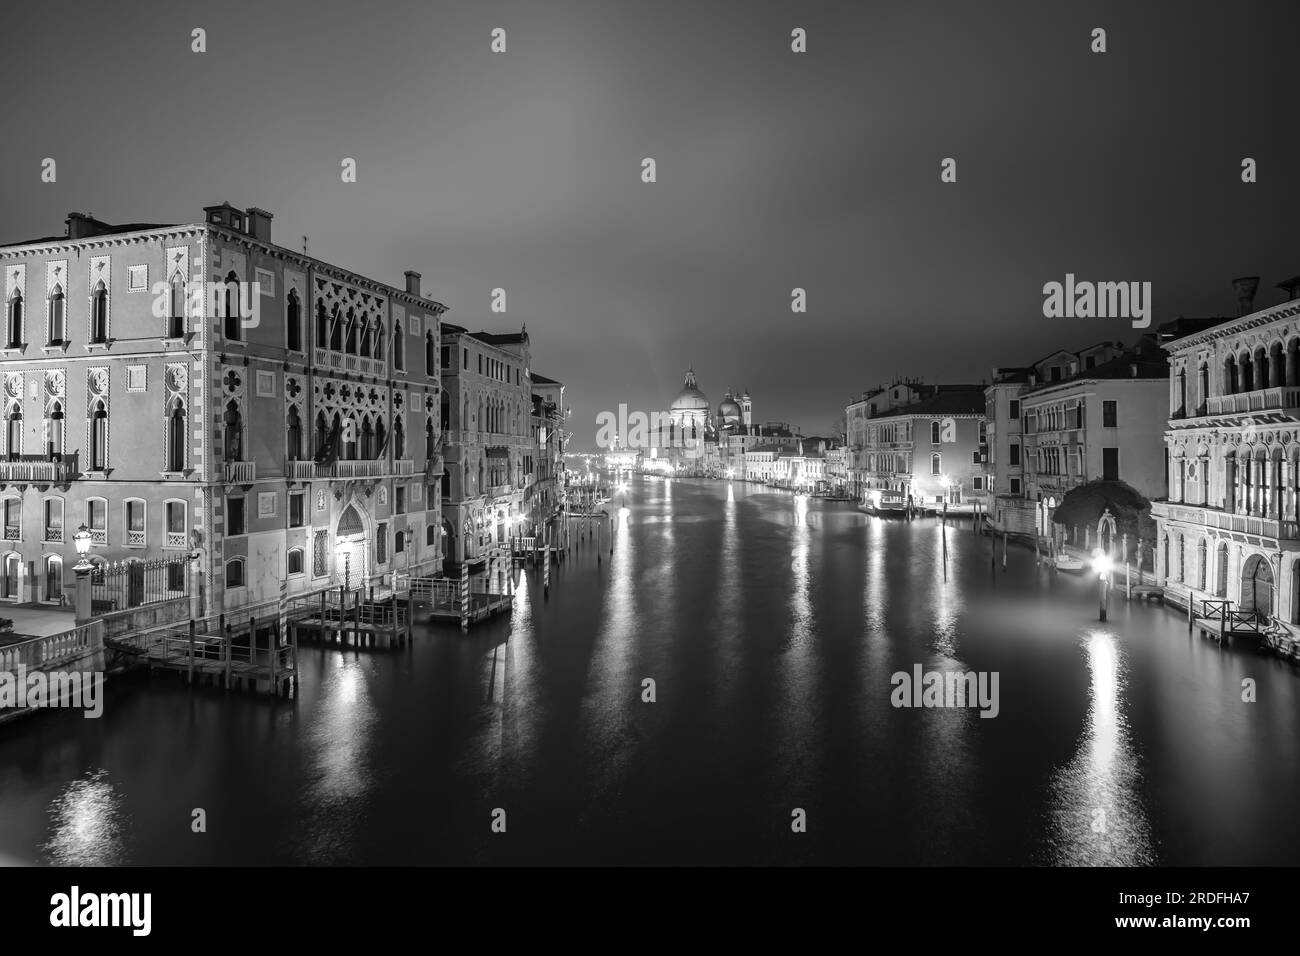 Venise, Italie - 27 avril 2019 : vue panoramique du magnifique Grand Canal illuminé de Venise Italie en noir et blanc Banque D'Images